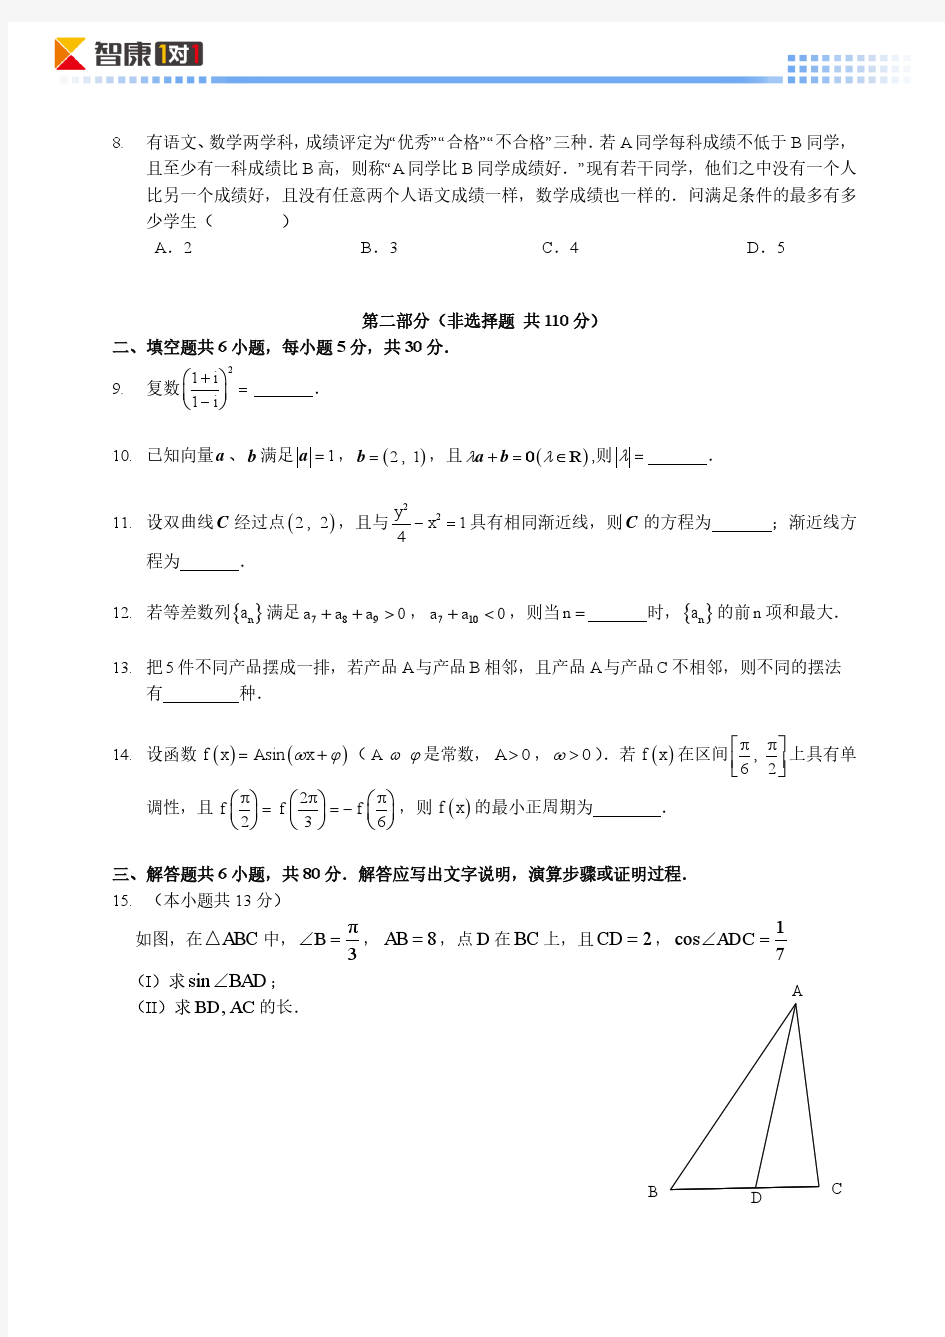 2014北京高考真题数学理(含解析)